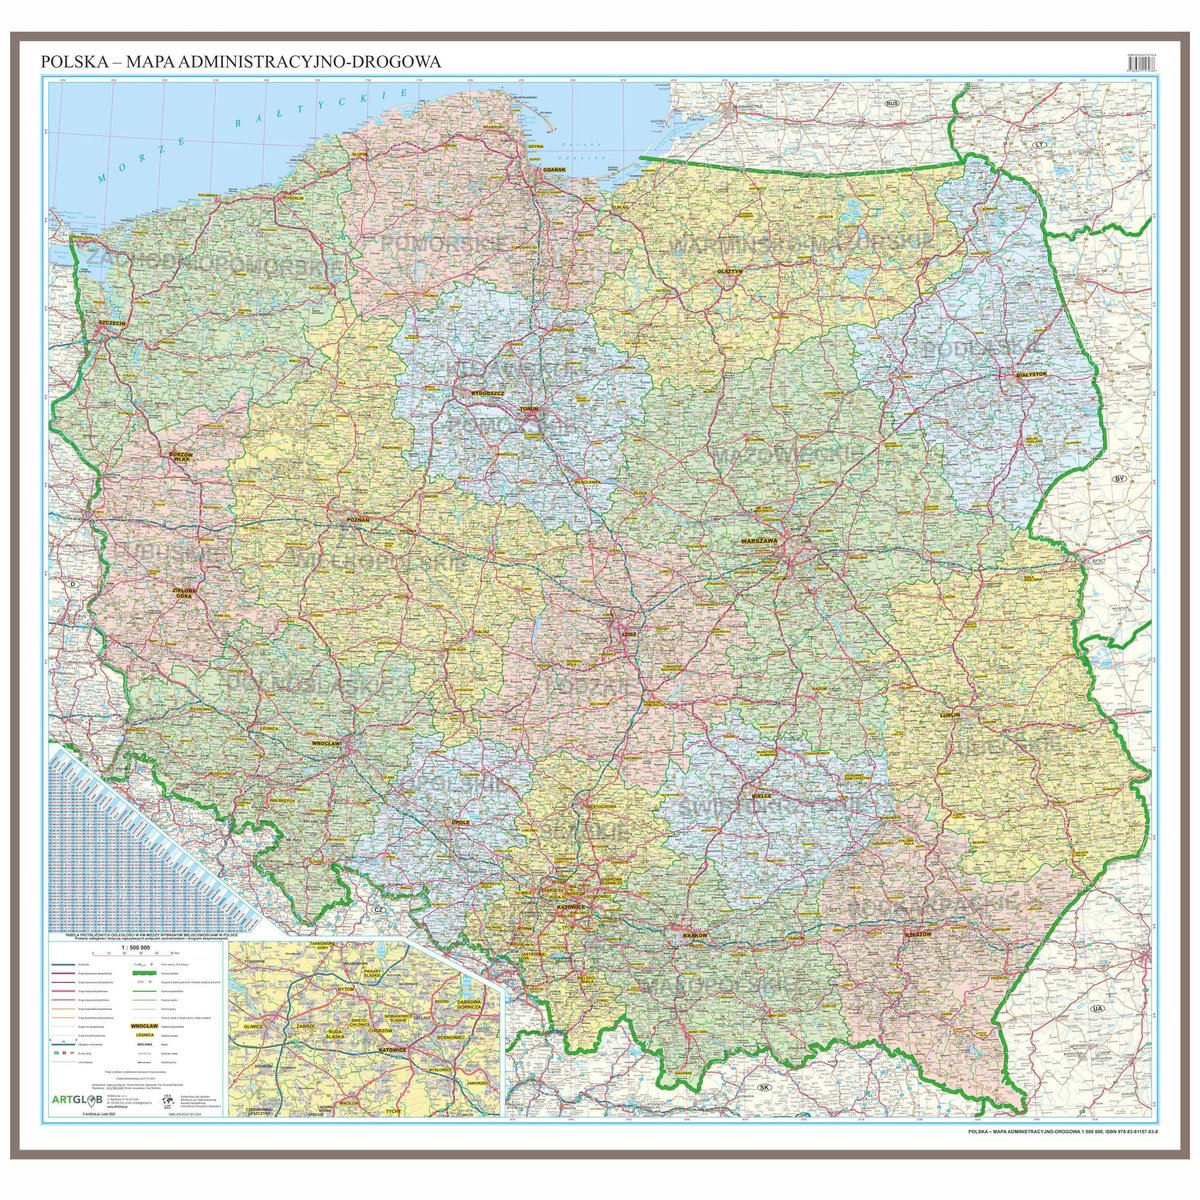 Zdjęcia - Gra planszowa Artglob Polska mapa ścienna administracyjno-drogowa do wpinania - pinboard, 1:500 